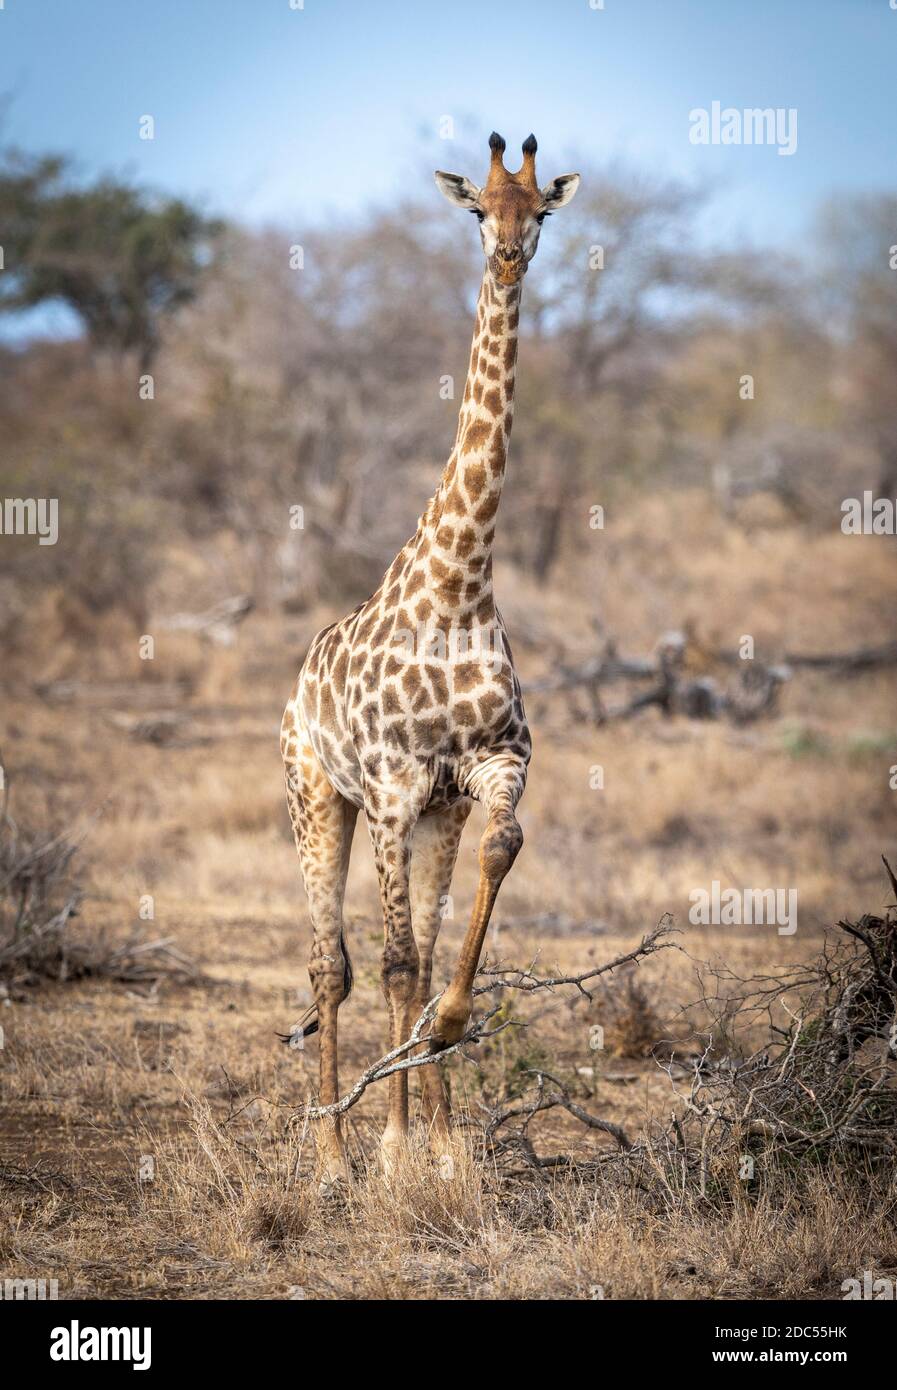 Girafe femelle adulte debout dans une brousse d'hiver sèche avec une Pied élevé dans le parc Kruger en Afrique du Sud Banque D'Images